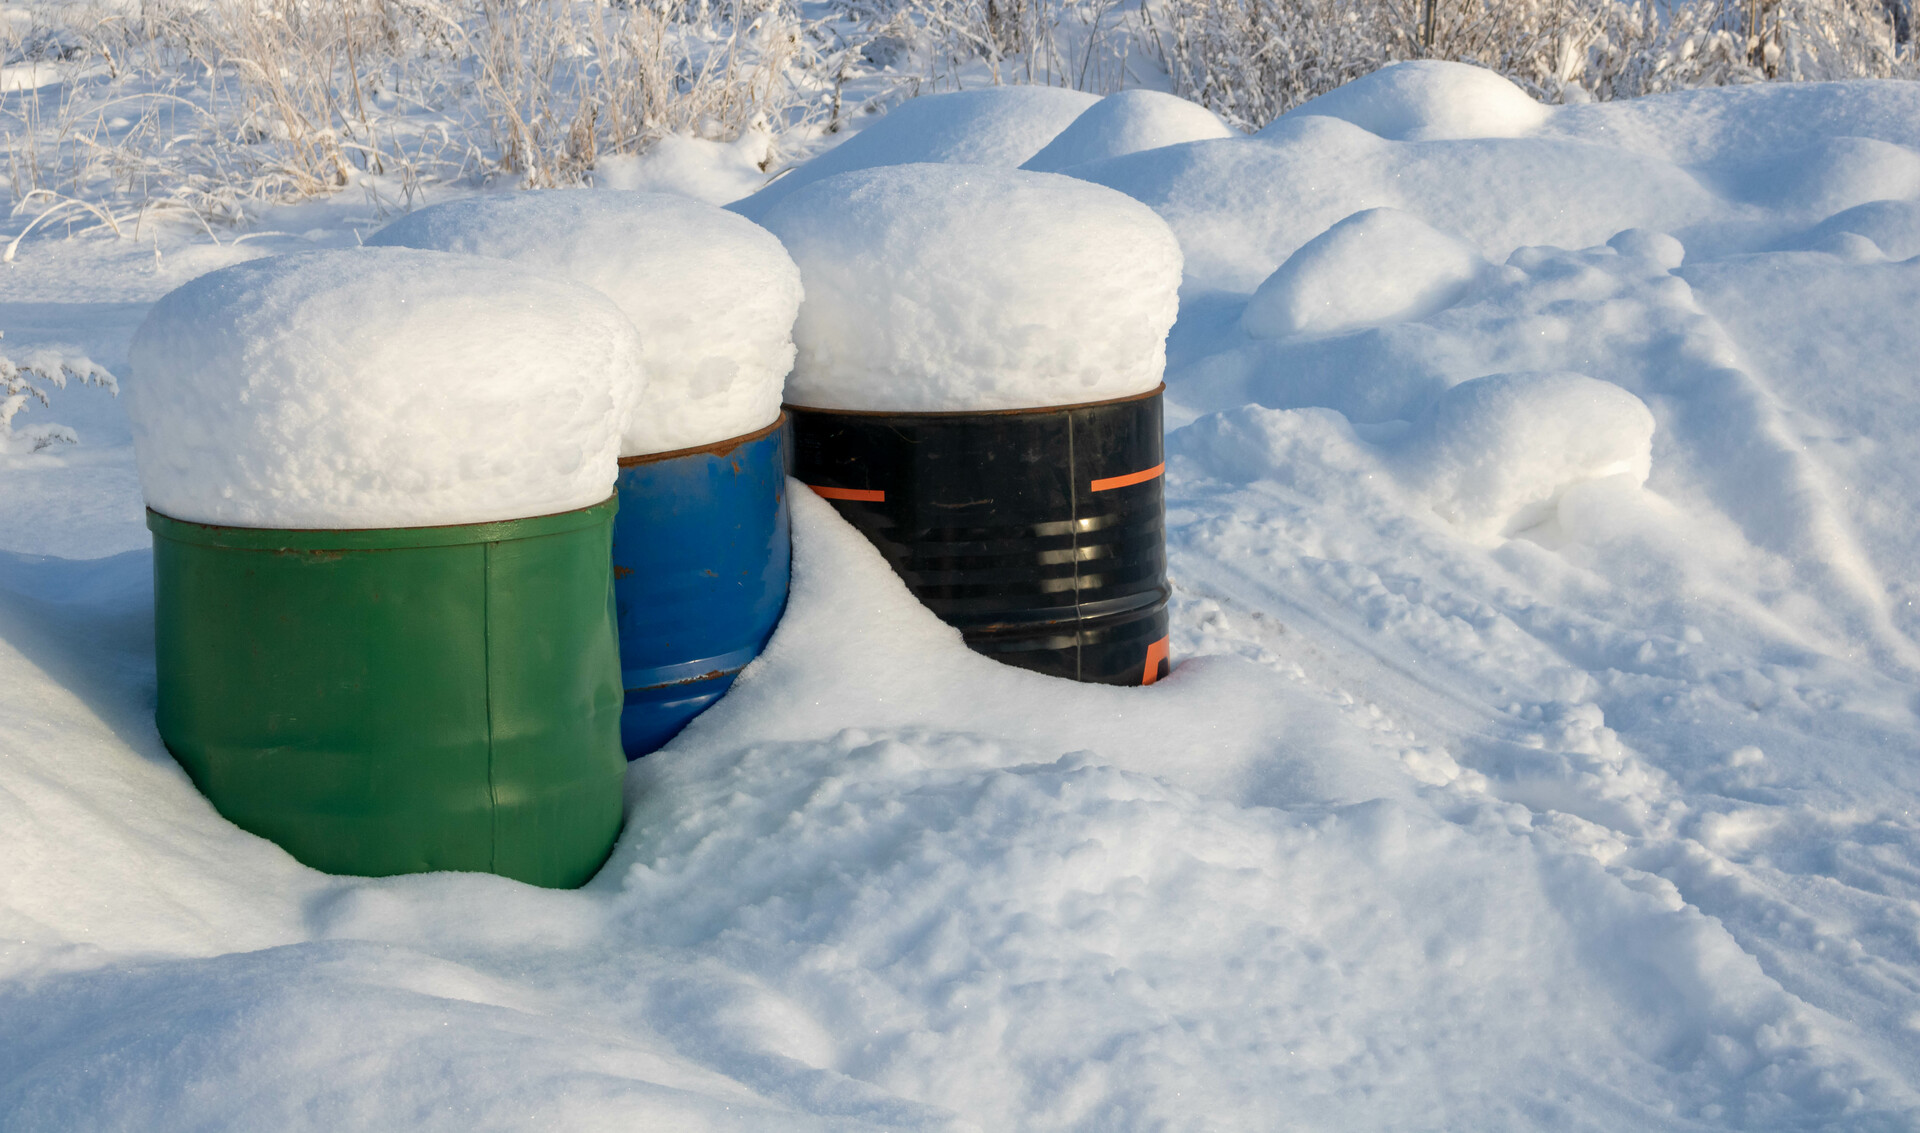 Na tym malowniczym obrazku możemy podziwiać kompostowniki zimą, które są przykryte warstwą śniegu, tworząc harmonijną scenerię. Pomimo mroźnej aury, kompostowniki nadal pełnią swoją rolę, przekształcając organiczne odpady w cenny kompost. Ich solidna konstrukcja i izolacyjne właściwości zapewniają optymalne warunki dla procesu kompostowania nawet w trudnych warunkach zimowych